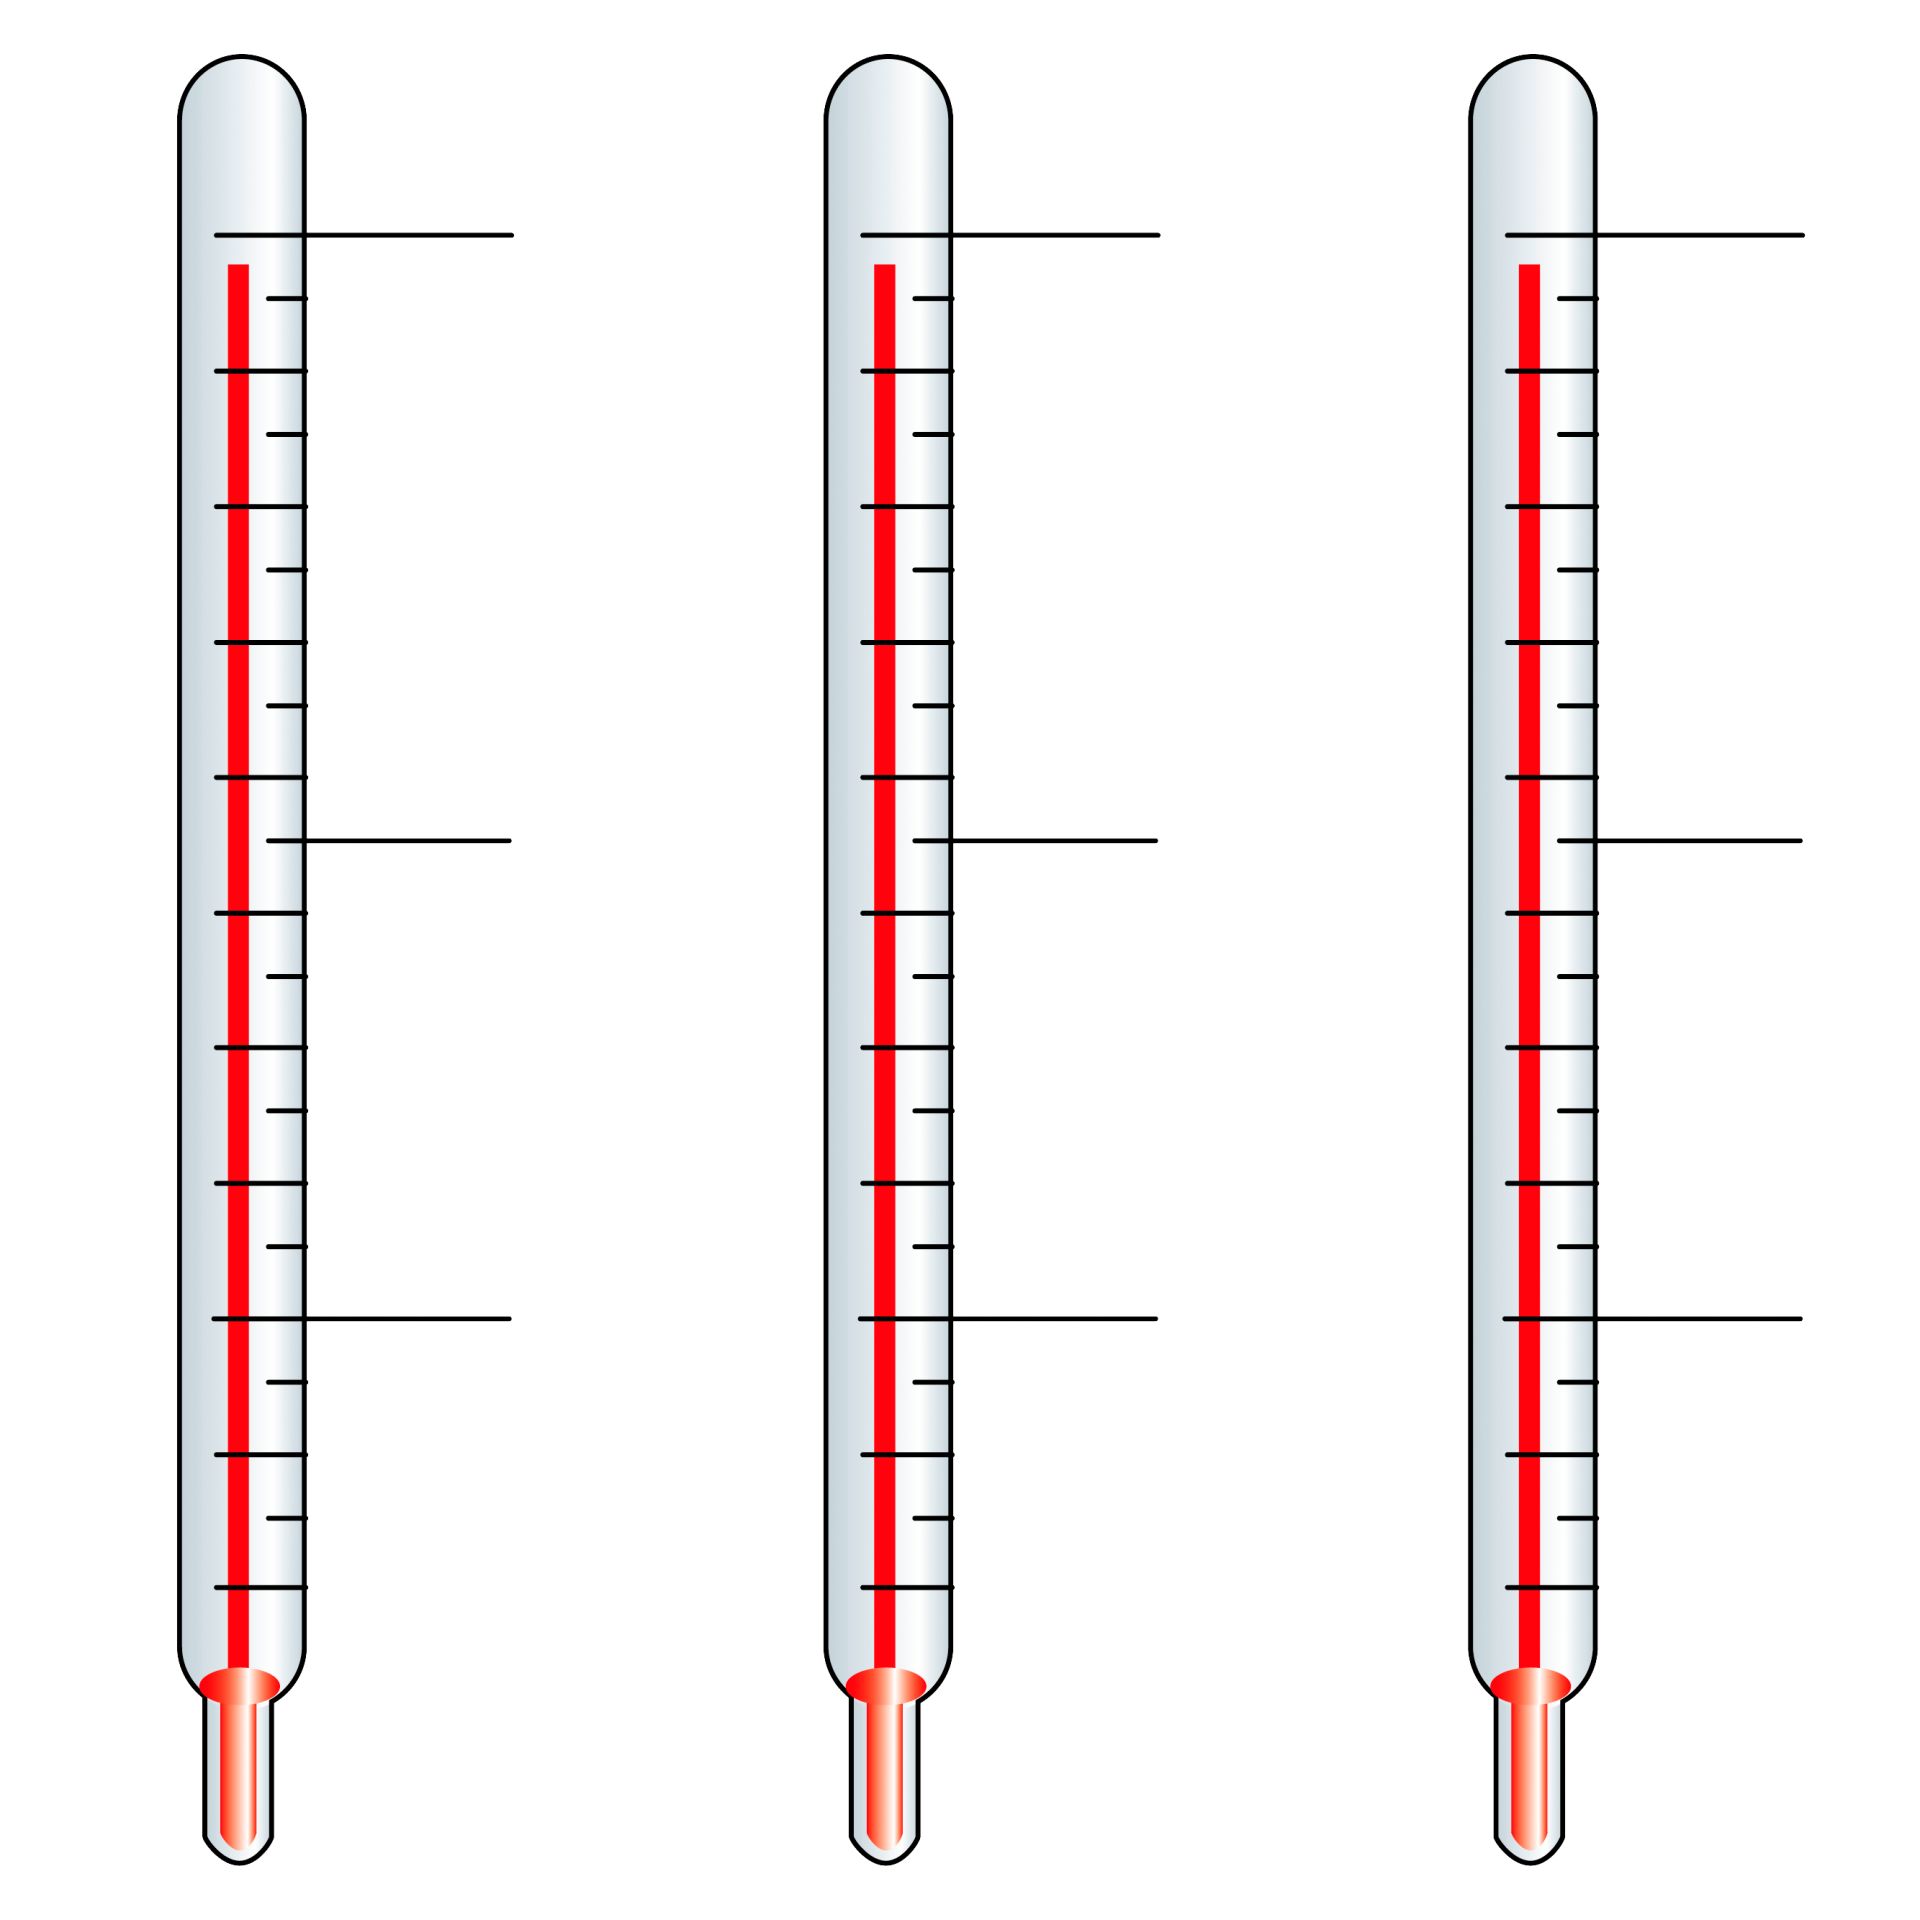 Measuring temperature